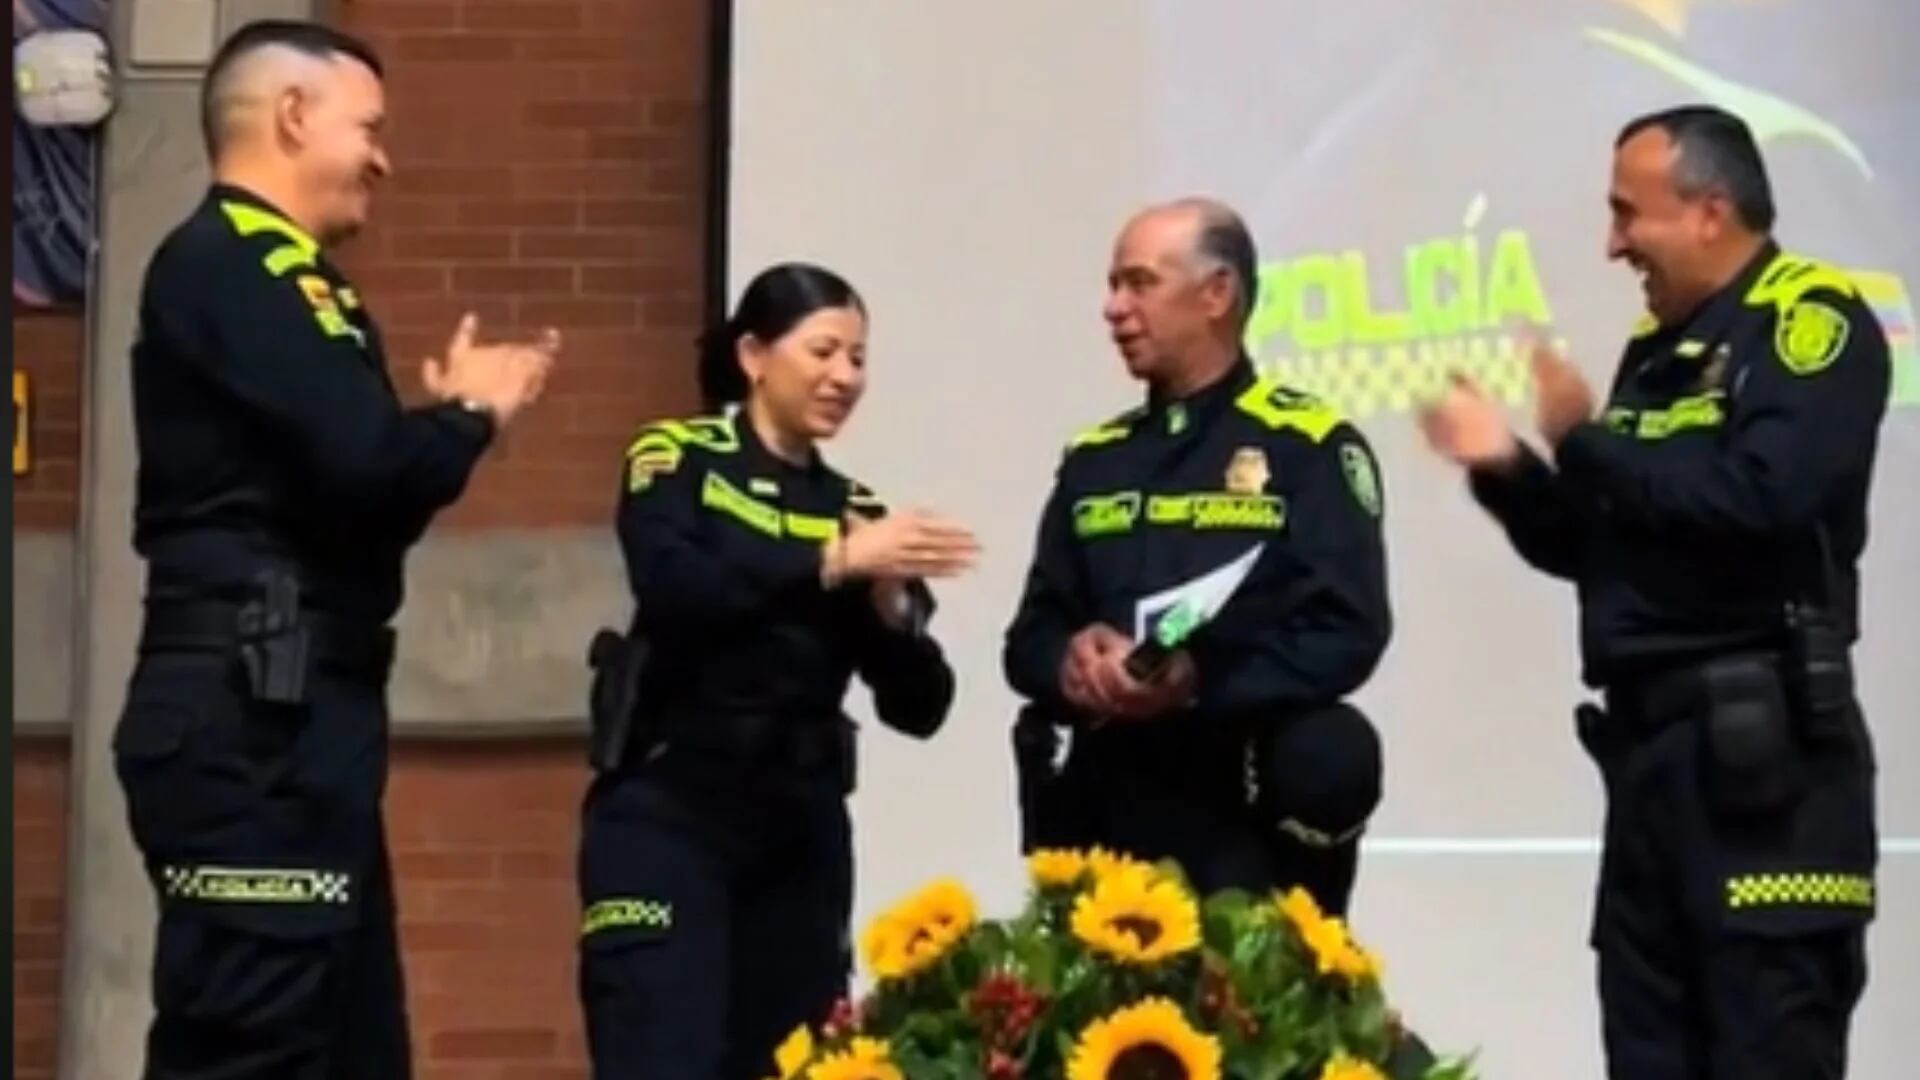 Un uniformado de la Policía, quien lleva 43 años de servicio, fue condecorado en Bogotá - crédito @metropolitanabogota/TikTok